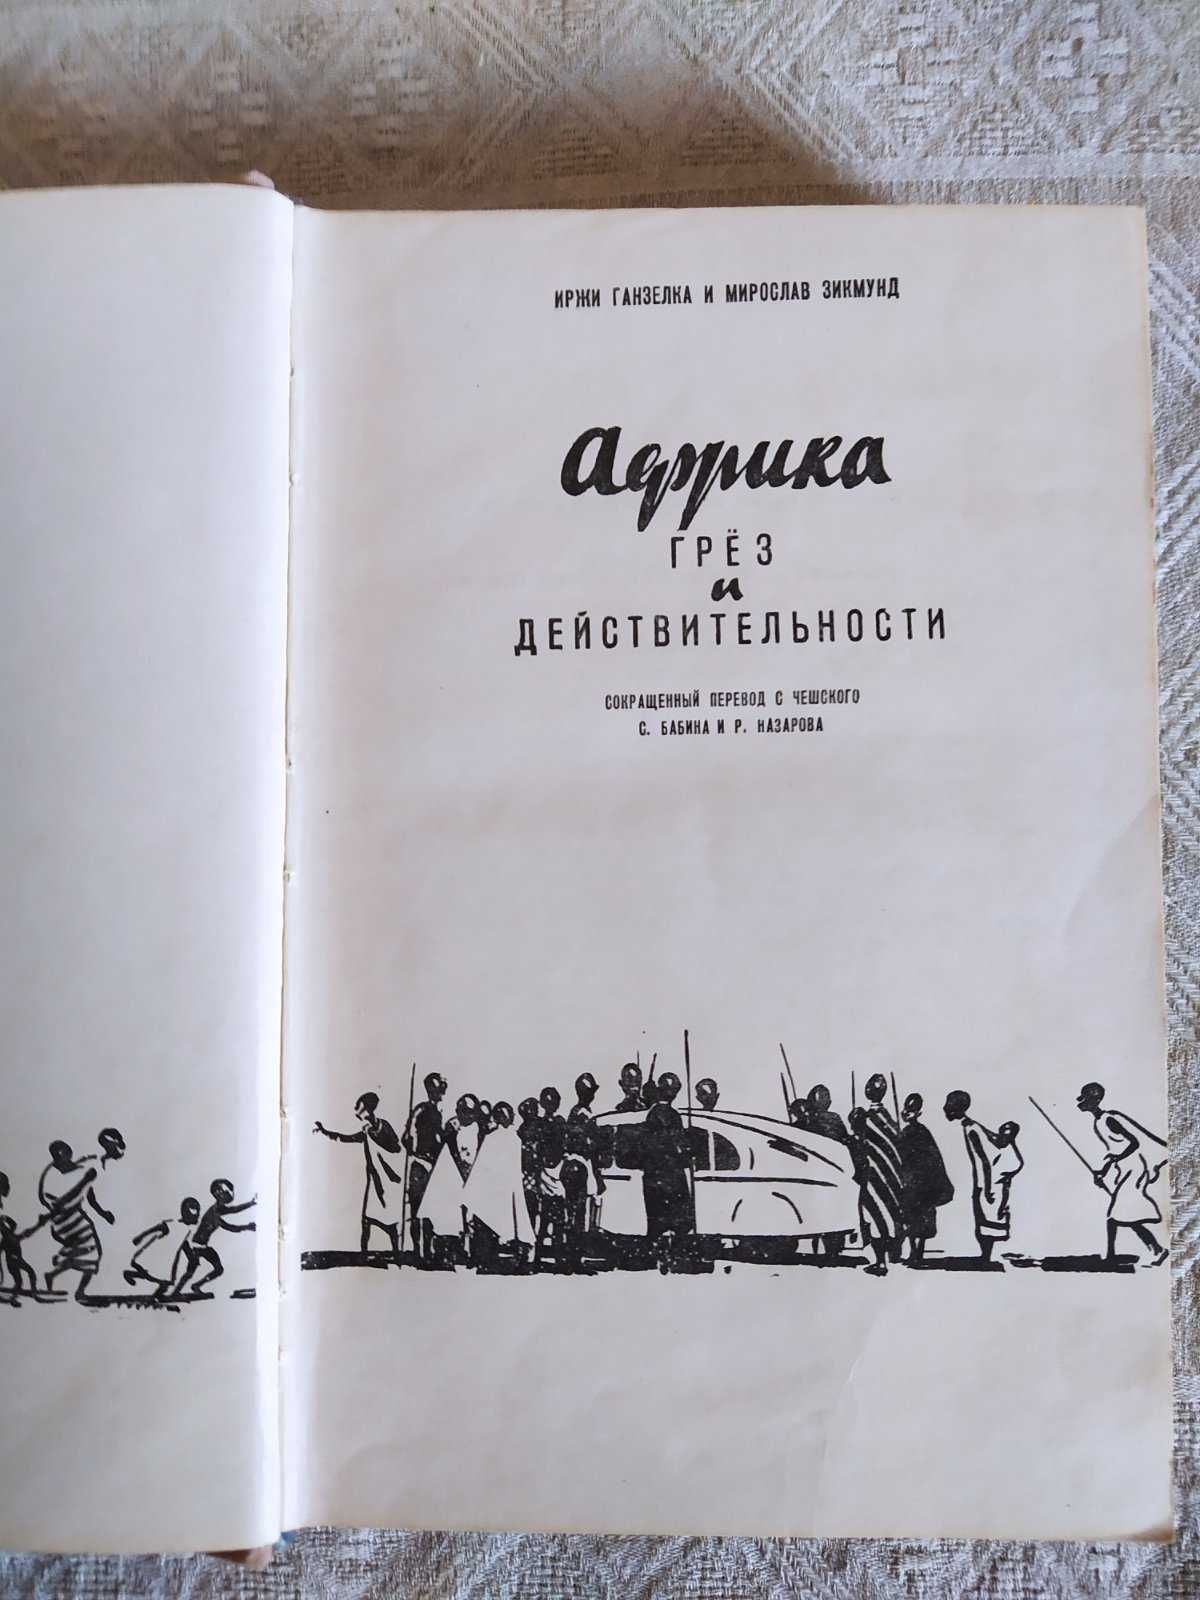 Книги Ганзелка и М.Зикмунд, 1956 г. "Африка.."